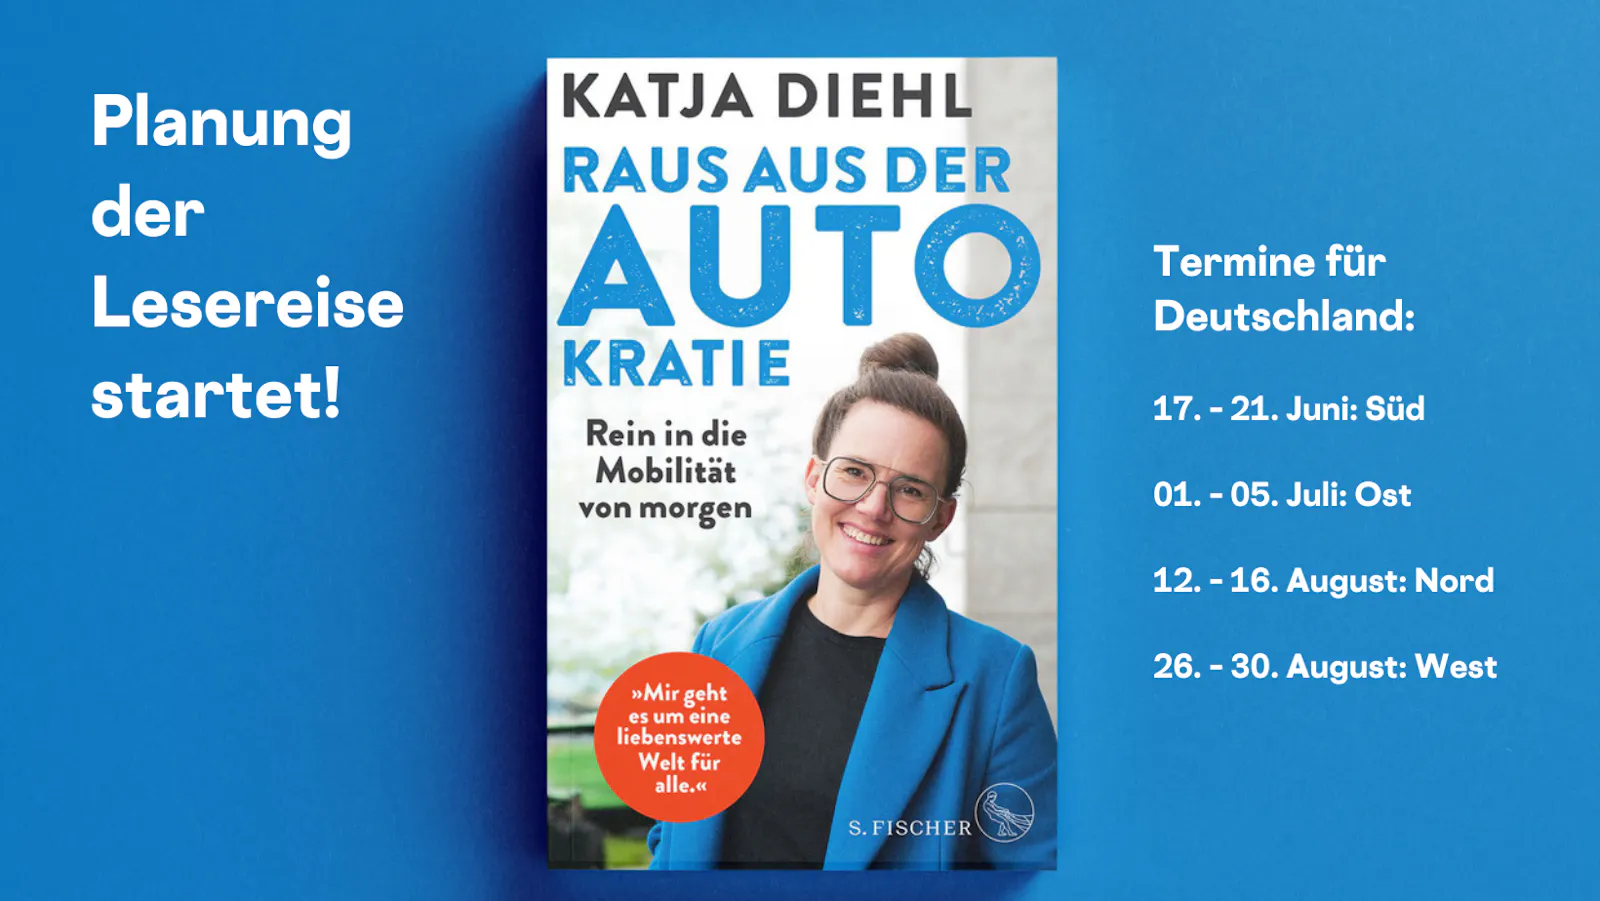 Planung der Lesereise startet!
Termine für Deutschland sind aufgelistet, in der Mitte mein Buch, Hintergrund in blau.